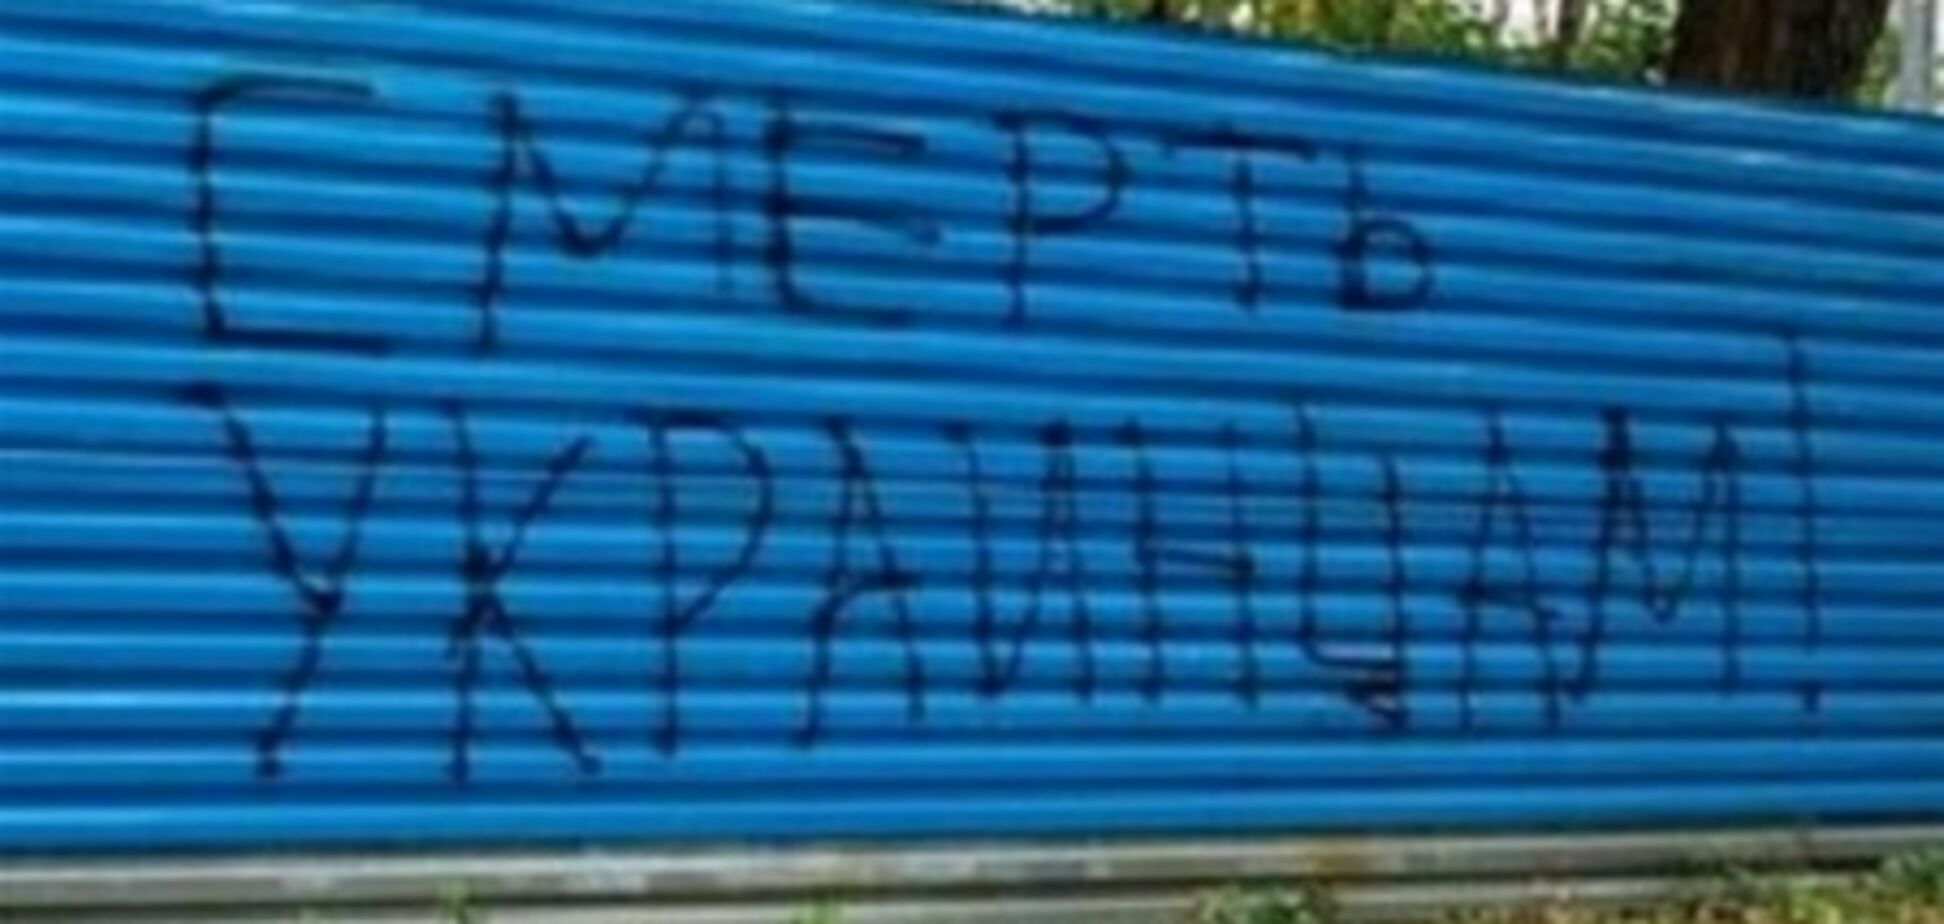 В Днепропетровске появились надписи 'Смерть хохлам!'